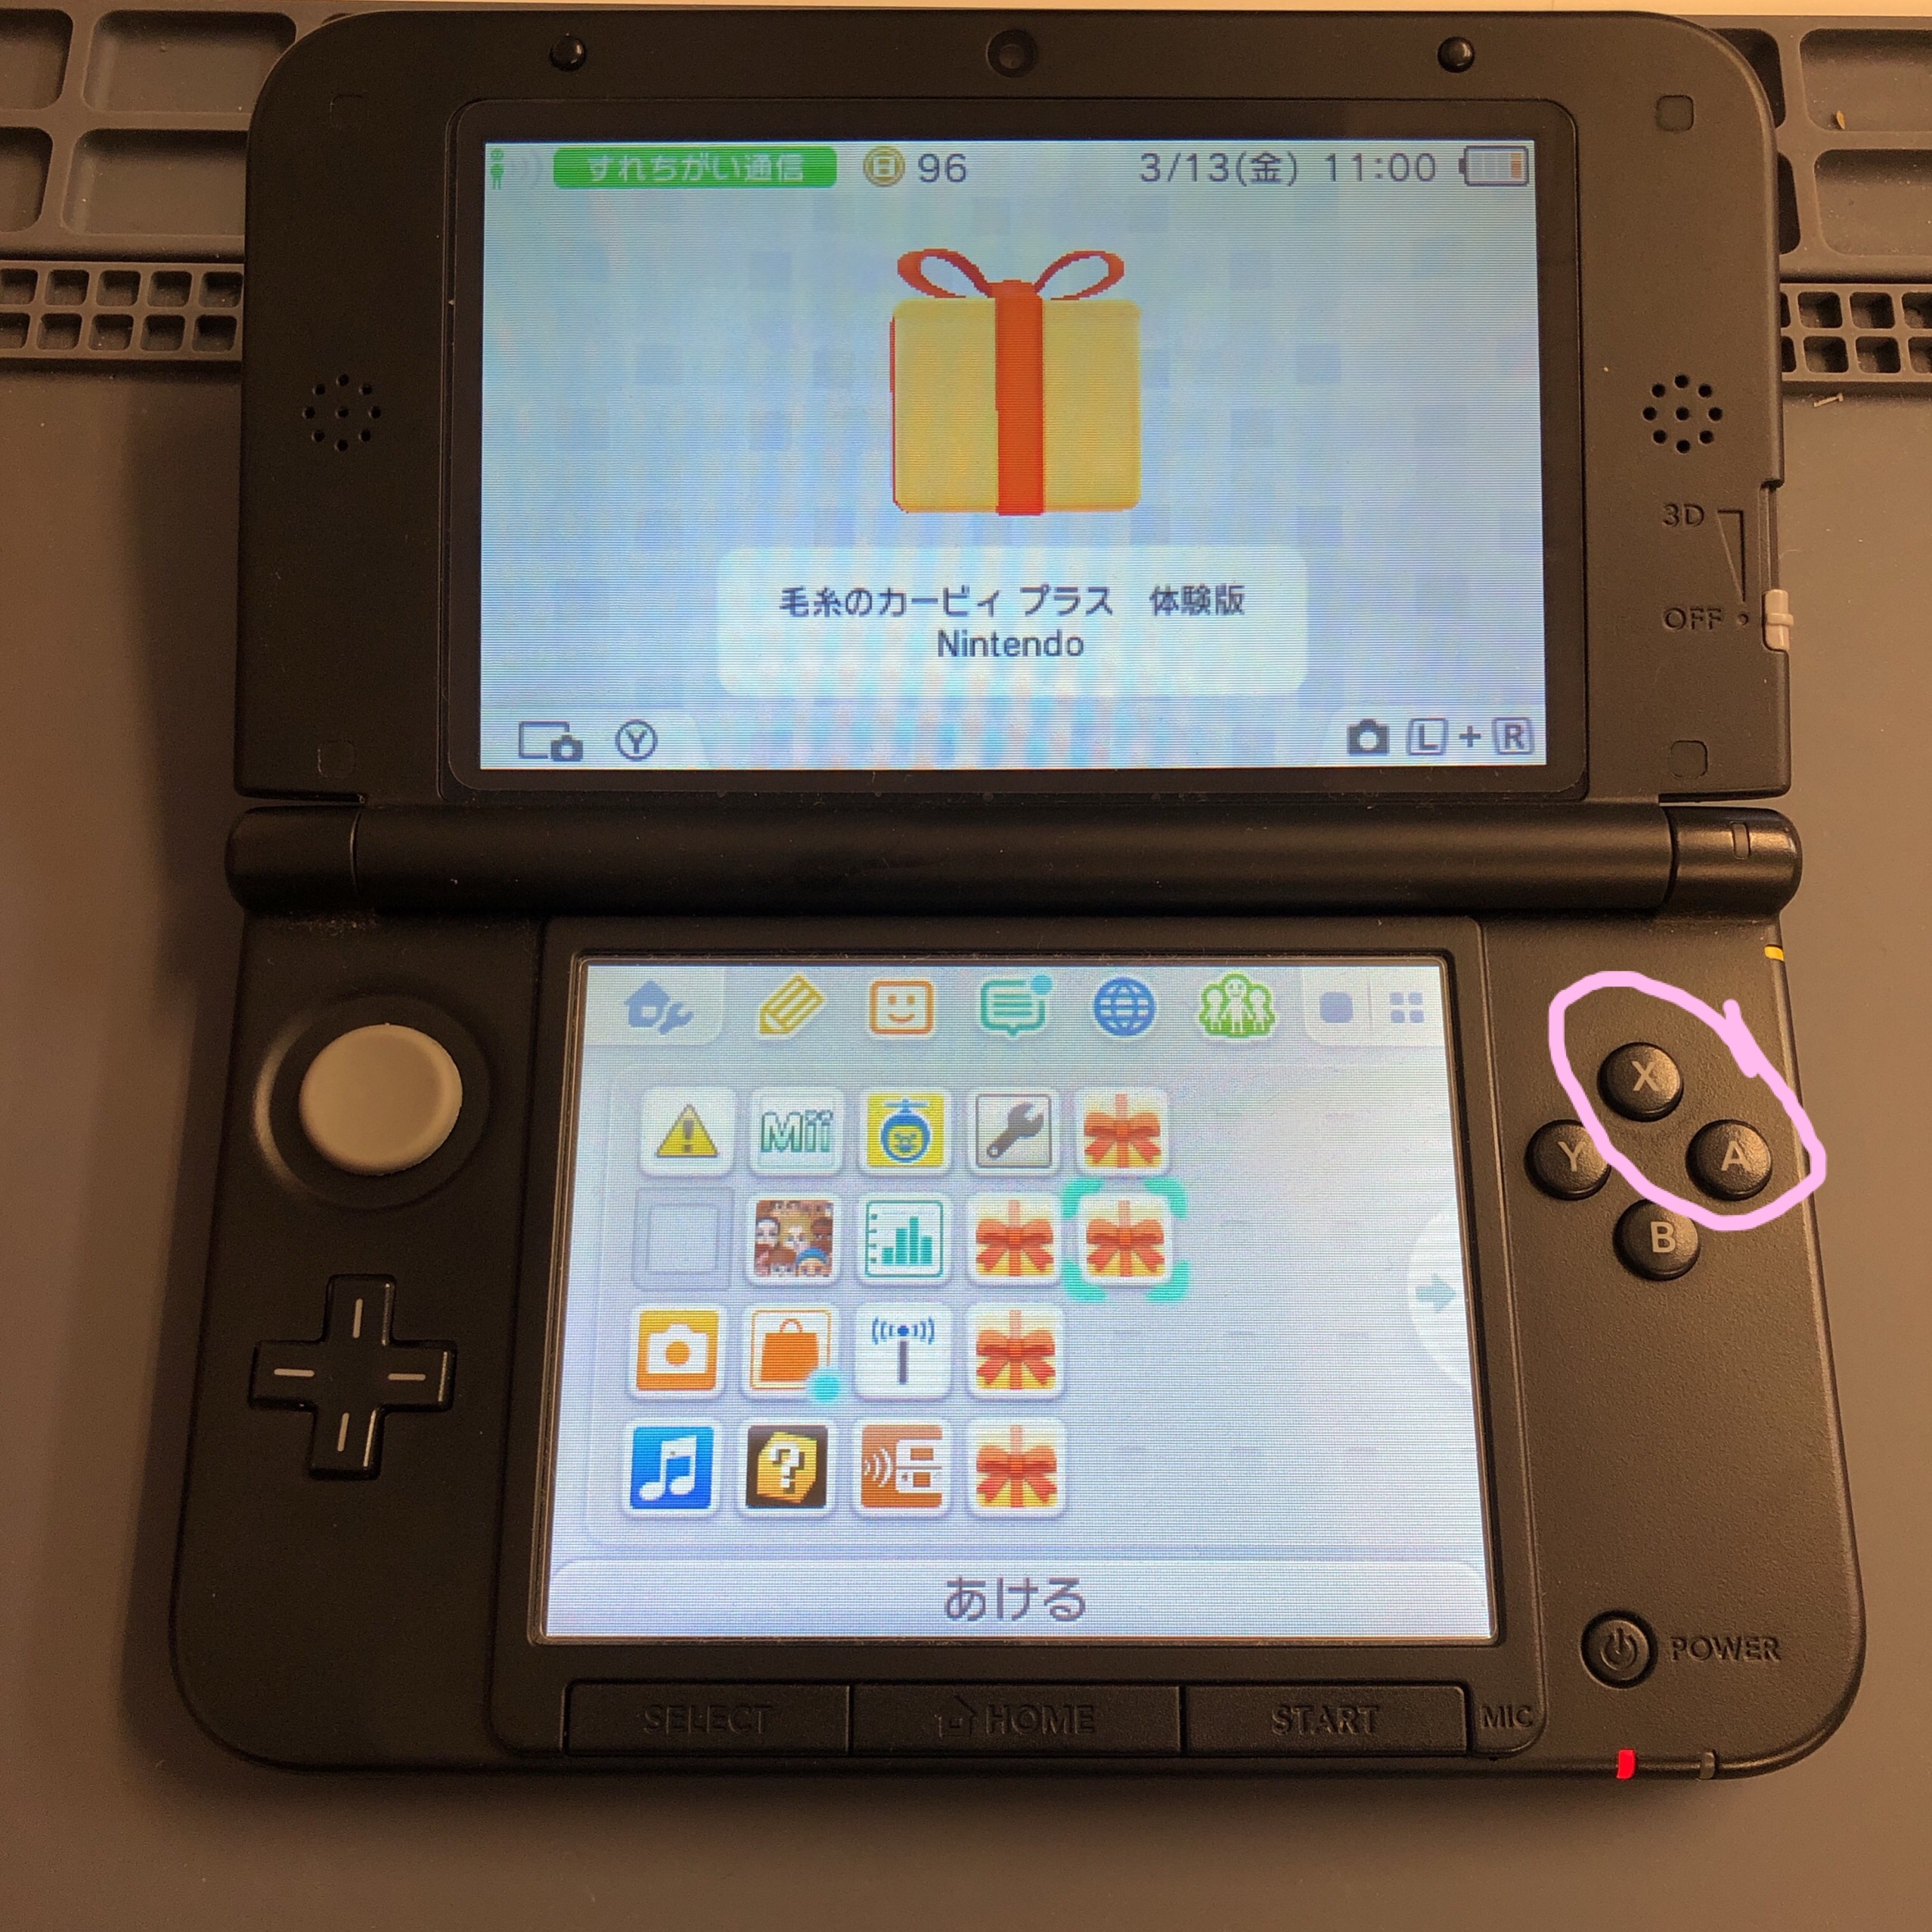 【3DS LL】強く押し込めば反応する……。この症状、やっぱりAボタンが多いかも⚠⚠【ボタン交換】 | Switch・Nintendo3DS